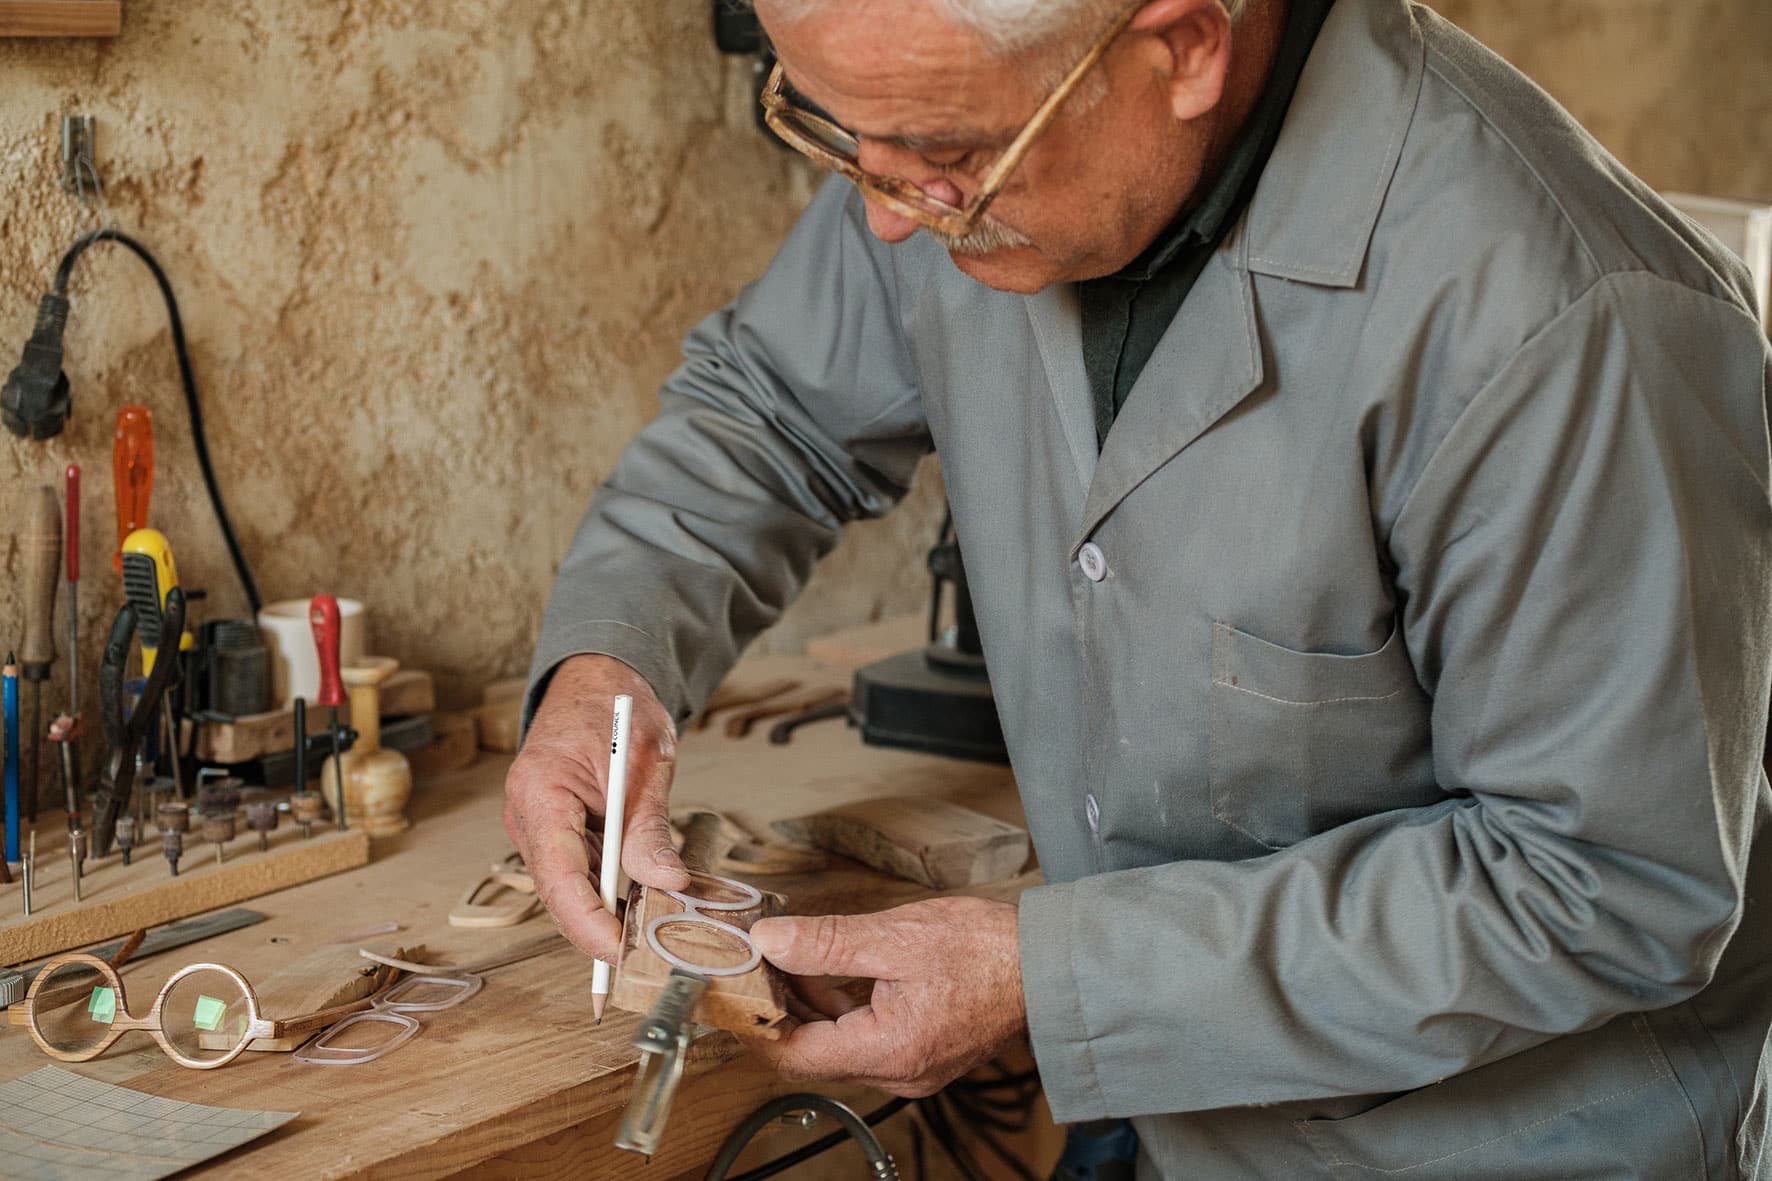 Amâncio traça forma dos óculos com lápis num pedaço de madeira a partir do molde.